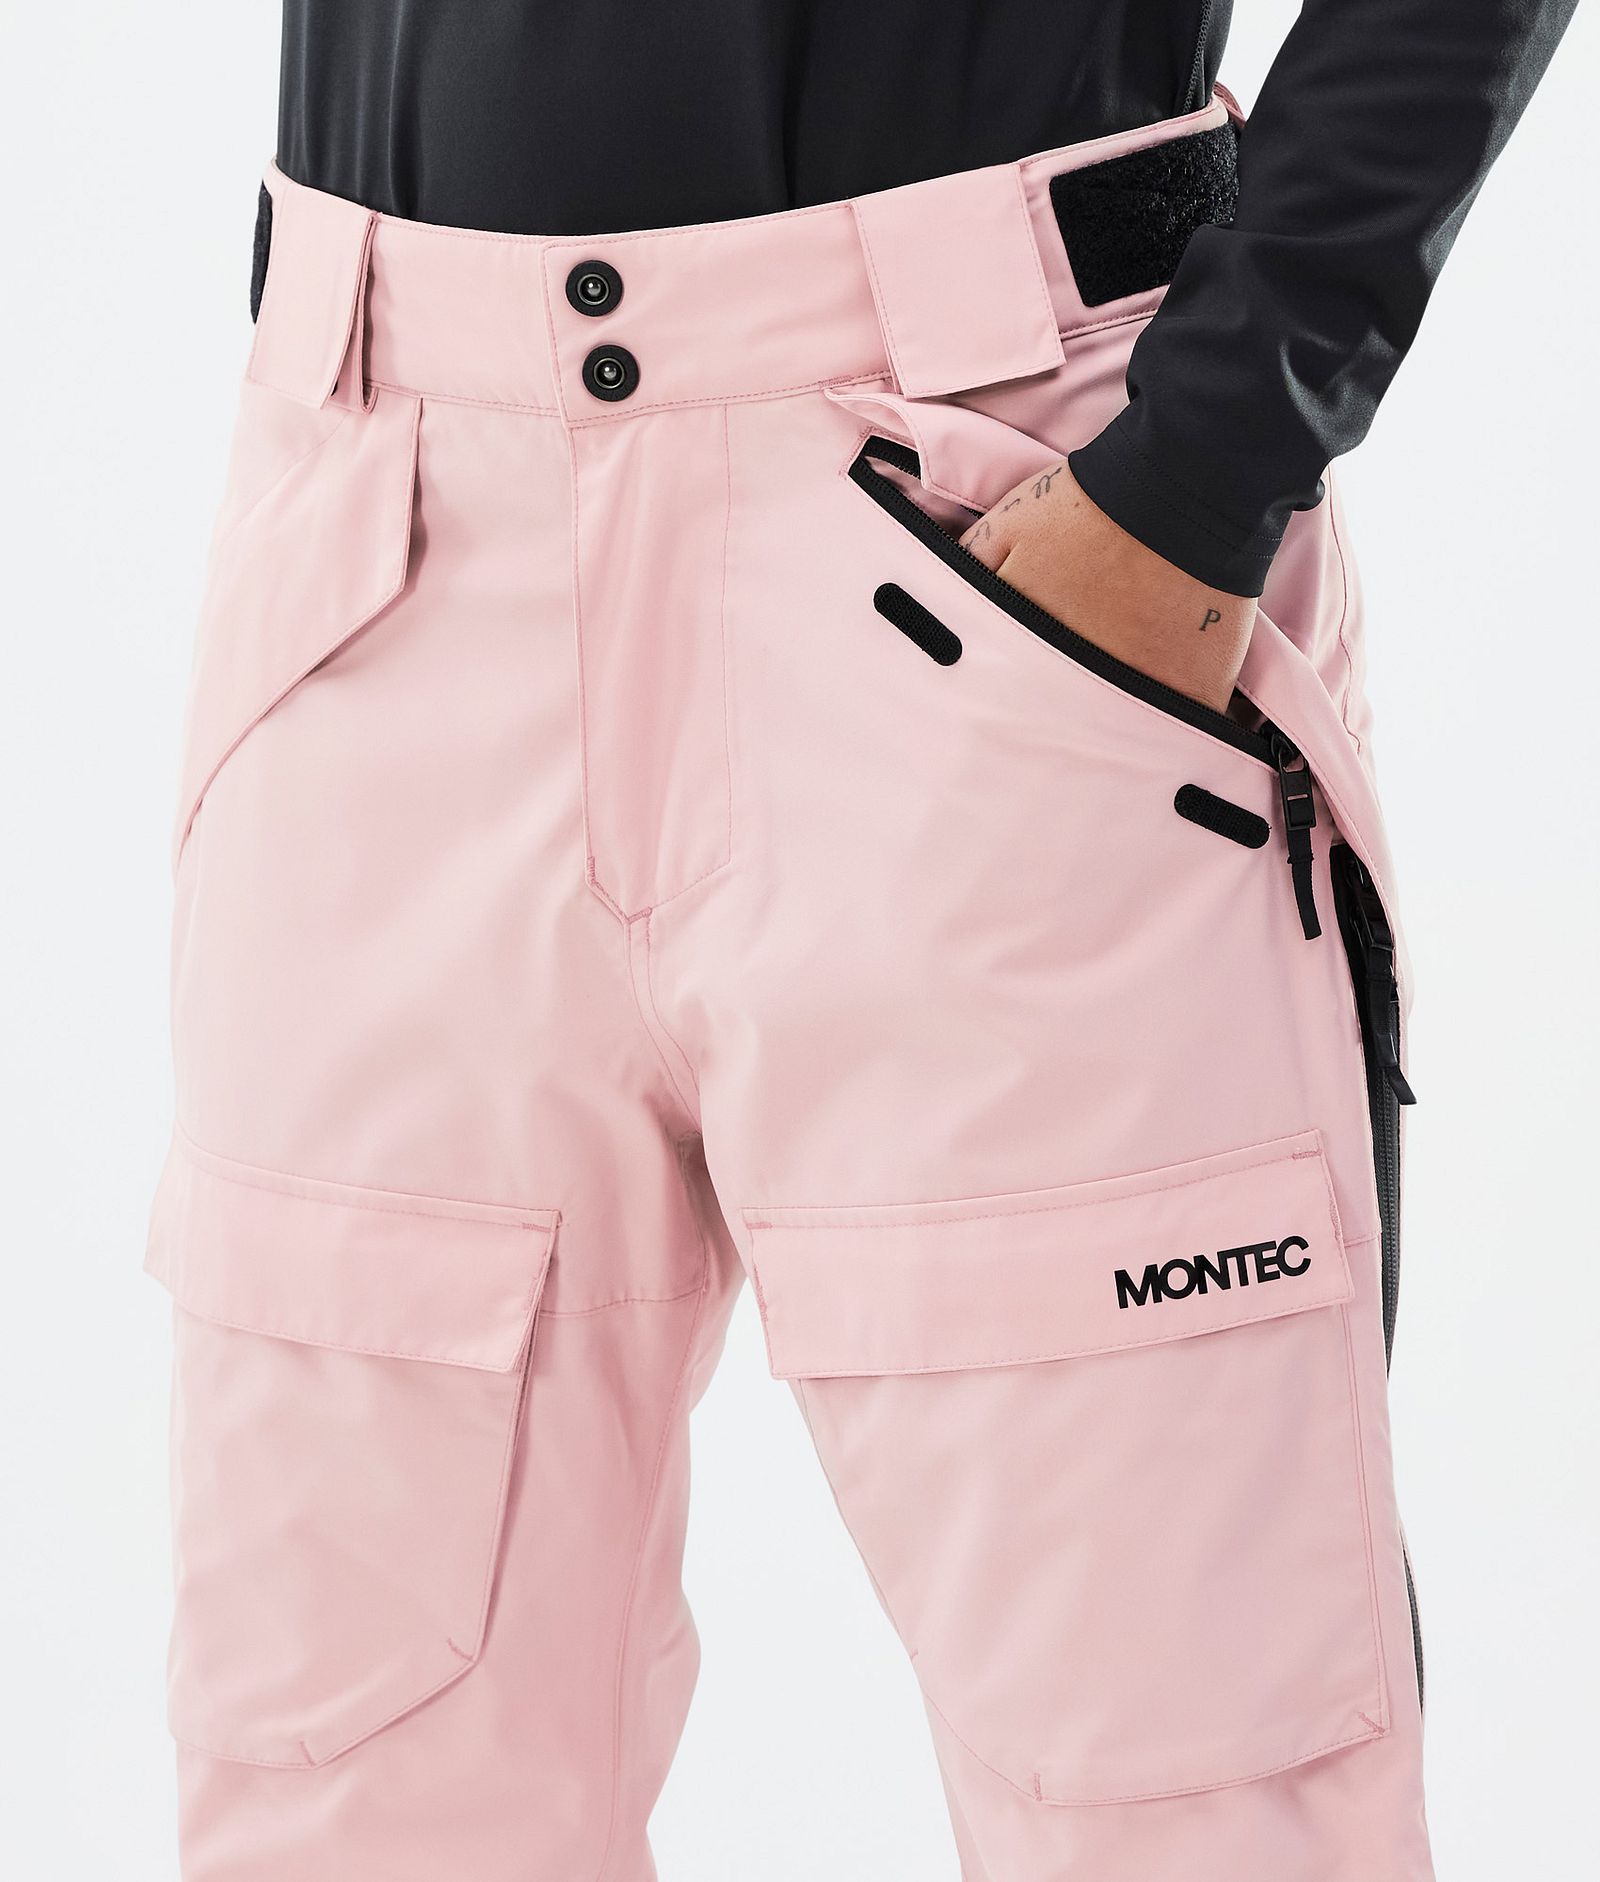 Kirin W Ski Pants Women Soft Pink, Image 5 of 6